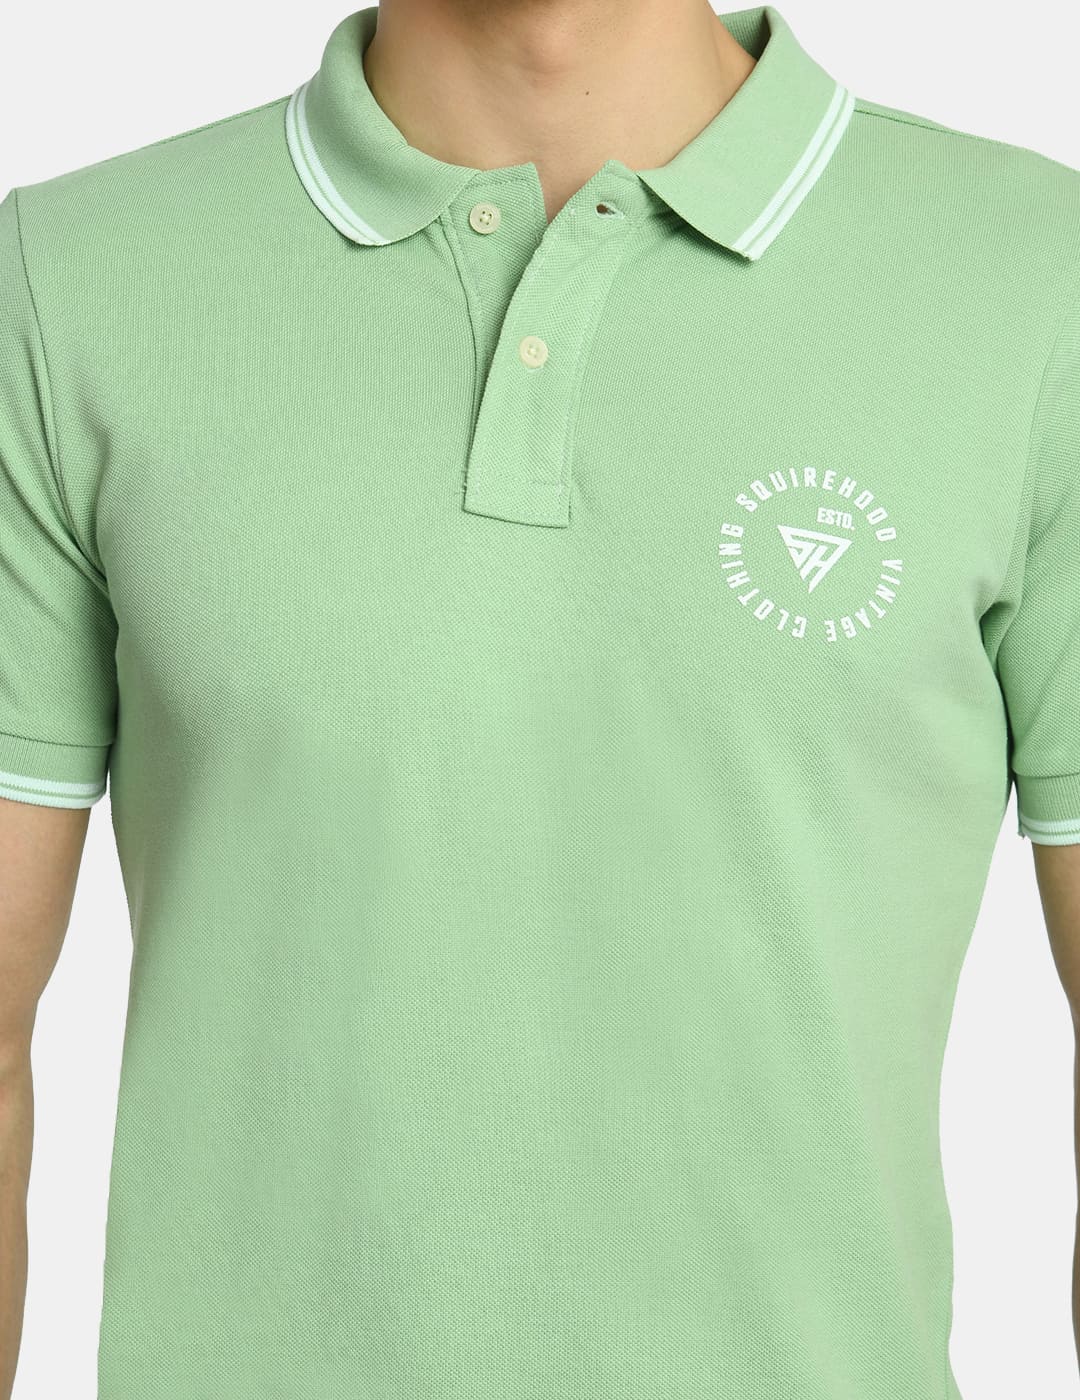 Men's Solid Aqua Green Polo T-Shirt